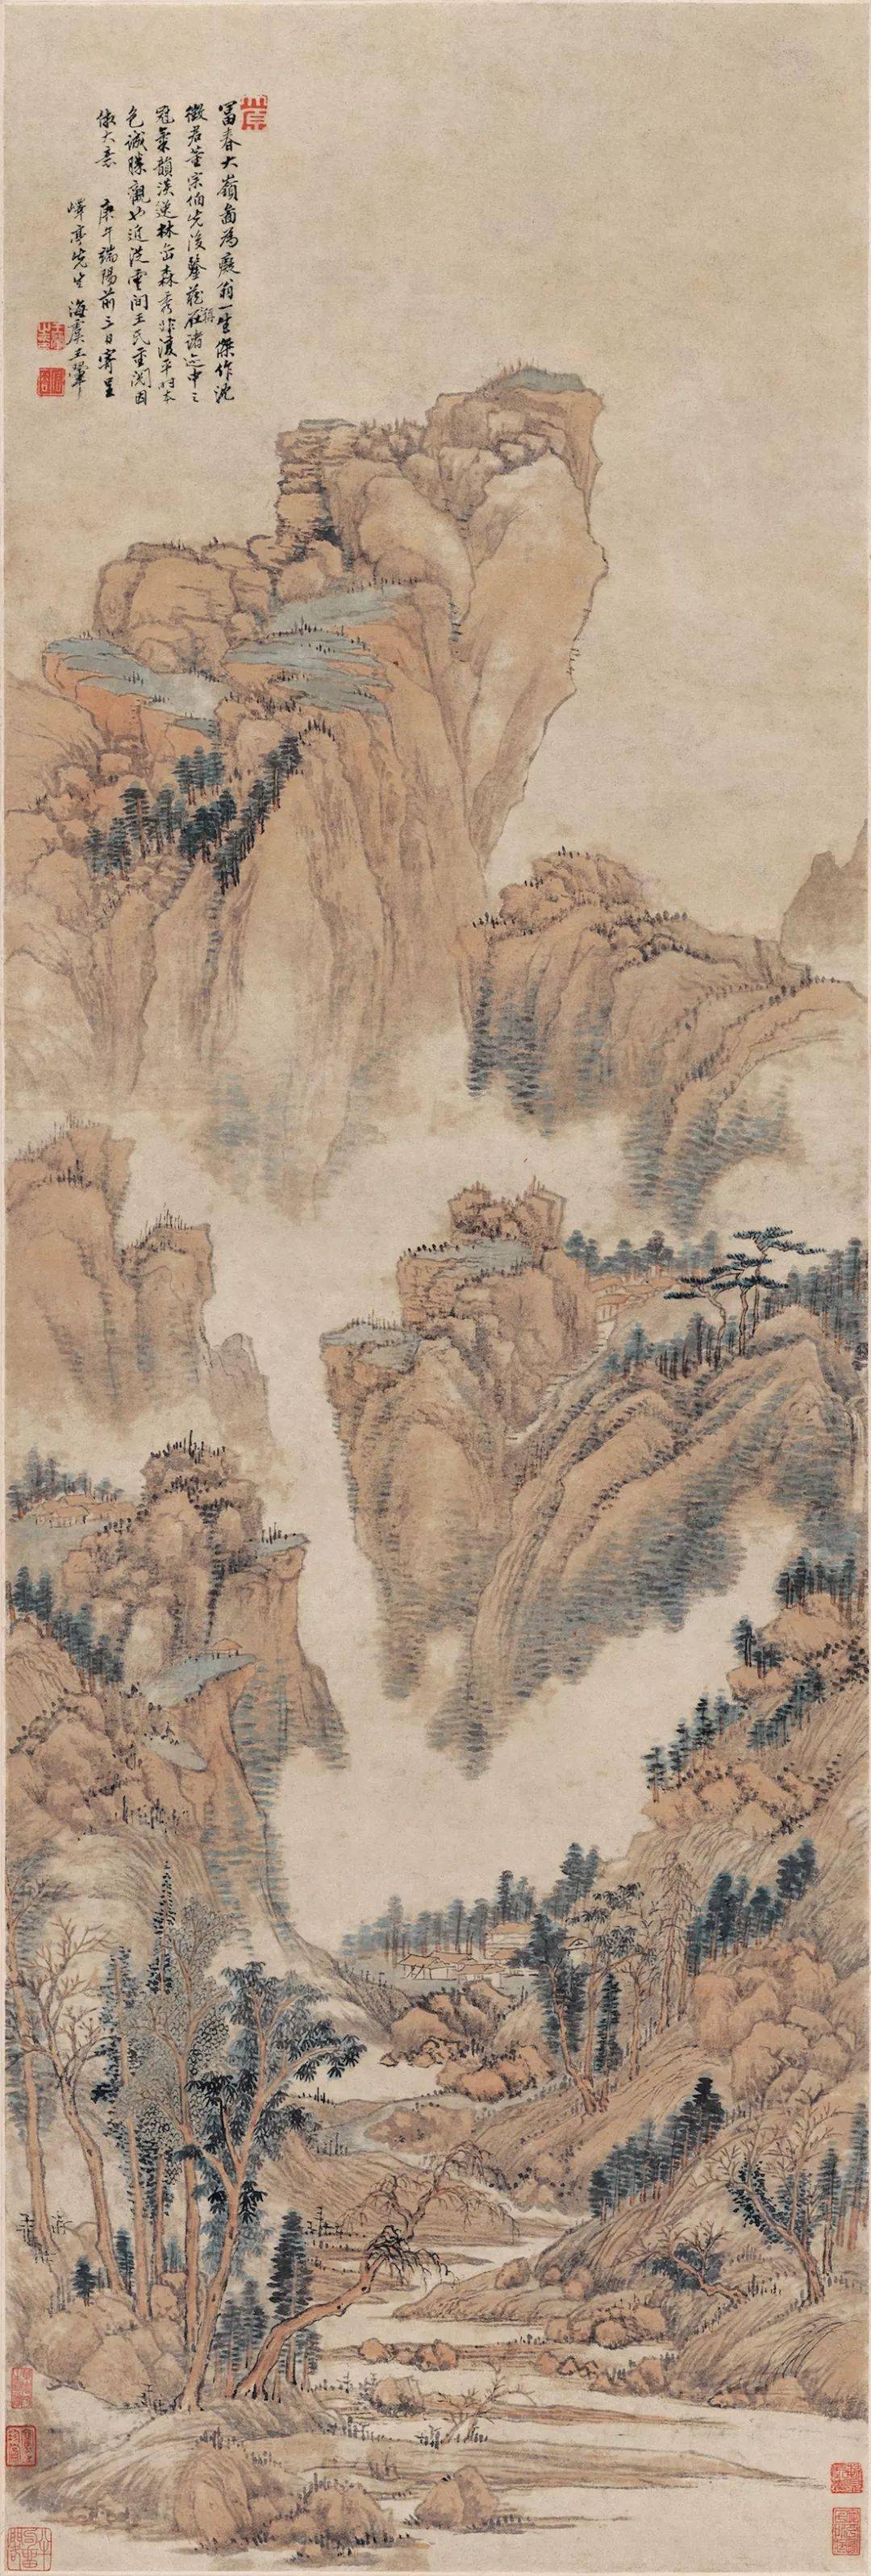 【书画收藏】王鉴:中国美术史上一位不可忽略的人物